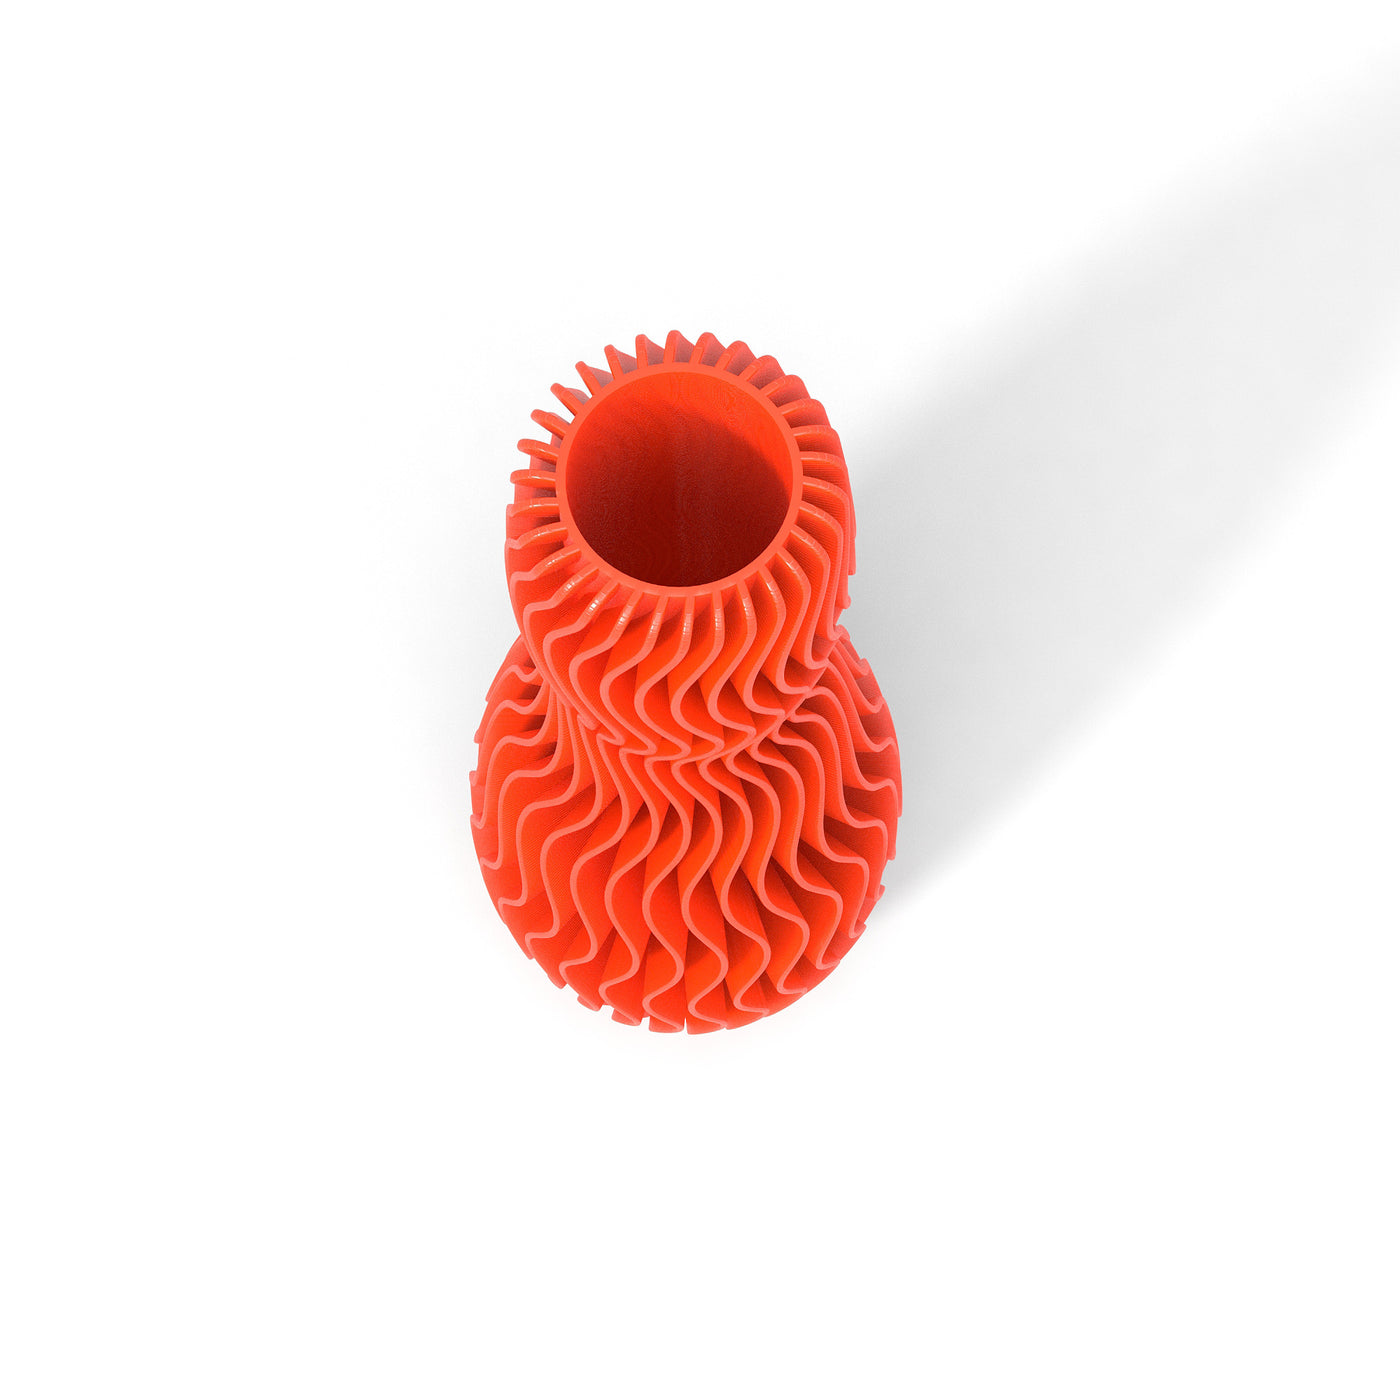 Oranžová designová váza 3D print WAVE 4 zeshora